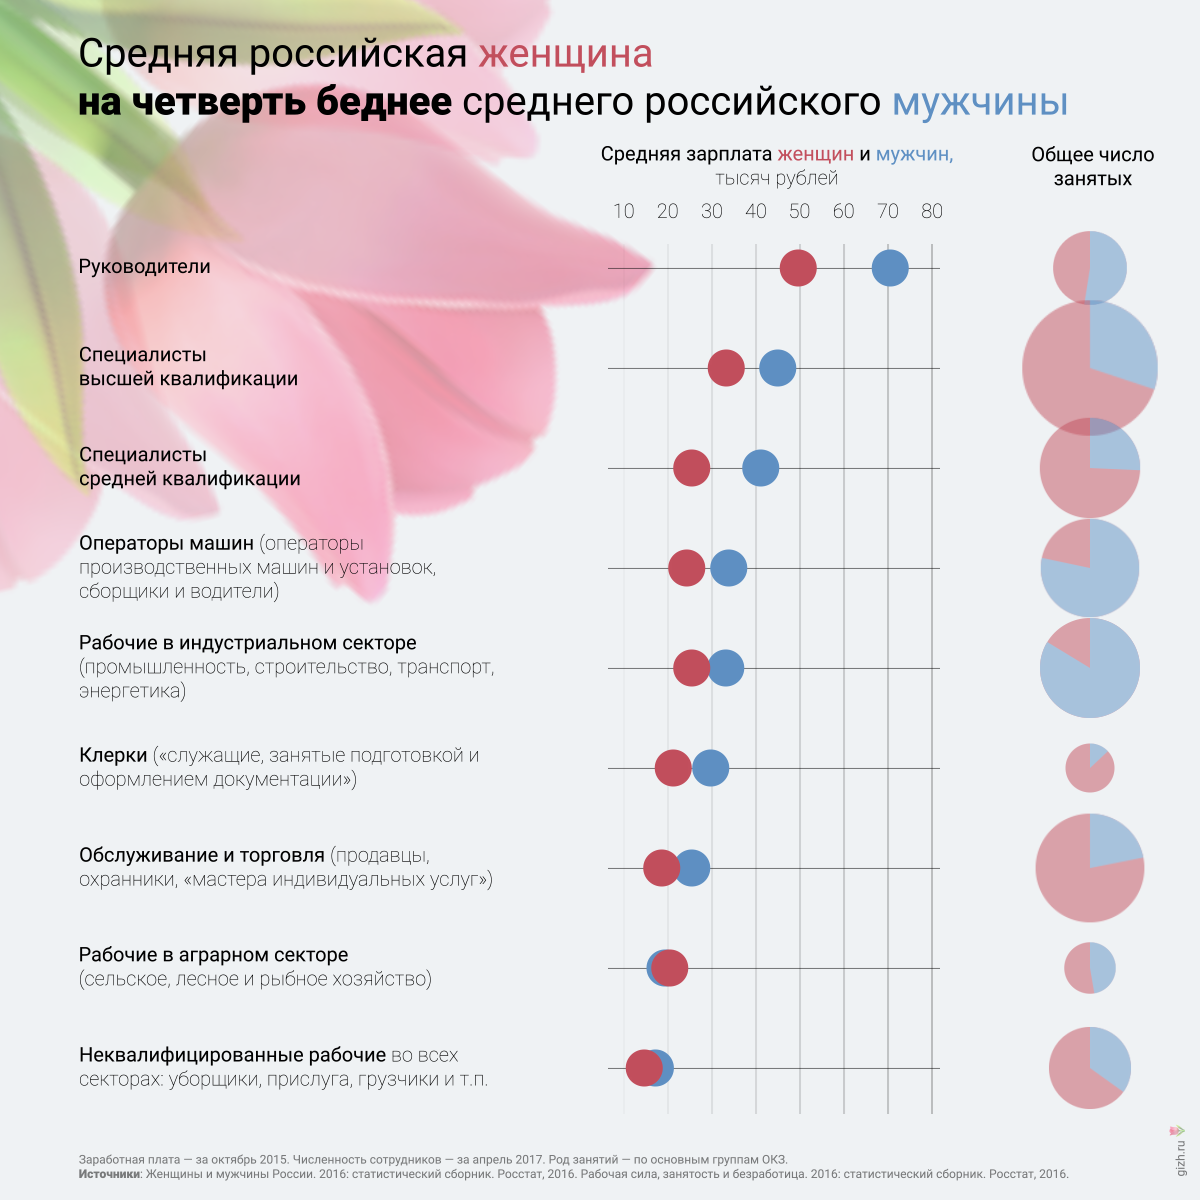 Зарплата мужчины в россии. Зарплата мужчин и женщин статистика. Статистика зарплат мужчин и женщин в России. Разница в зарплате мужчин и женщин. Зарплаты женщин и мужчин в России.